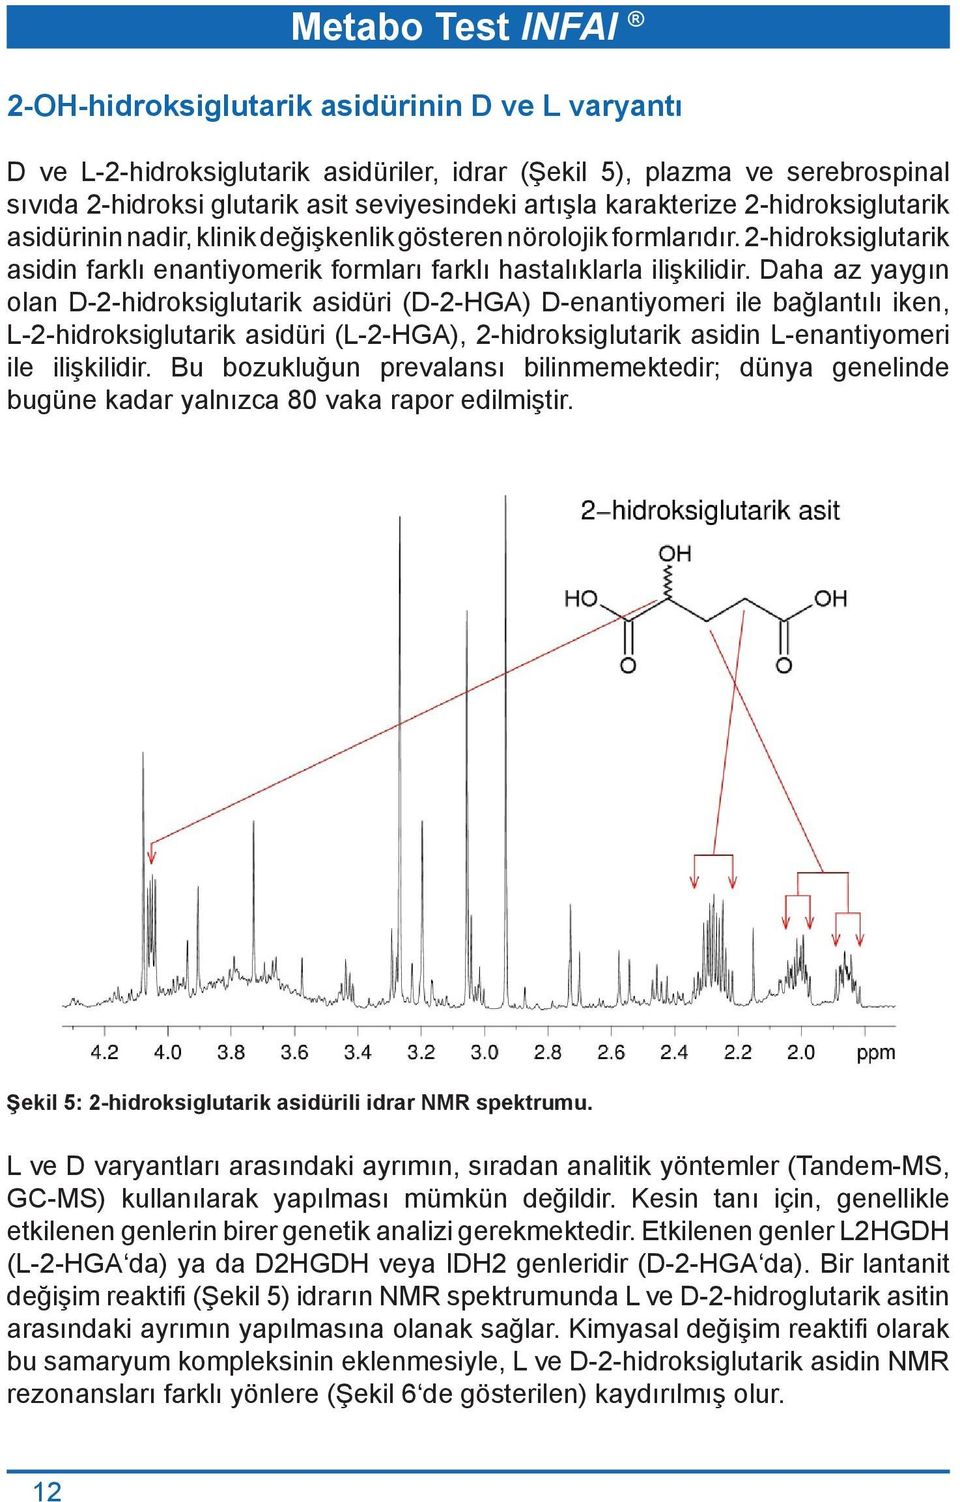 Daha az yaygın olan D-2-hidroksiglutarik asidüri (D-2-HGA) D-enantiyomeri ile bağlantılı iken, L-2-hidroksiglutarik asidüri (L-2-HGA), 2-hidroksiglutarik asidin L-enantiyomeri ile ilişkilidir.